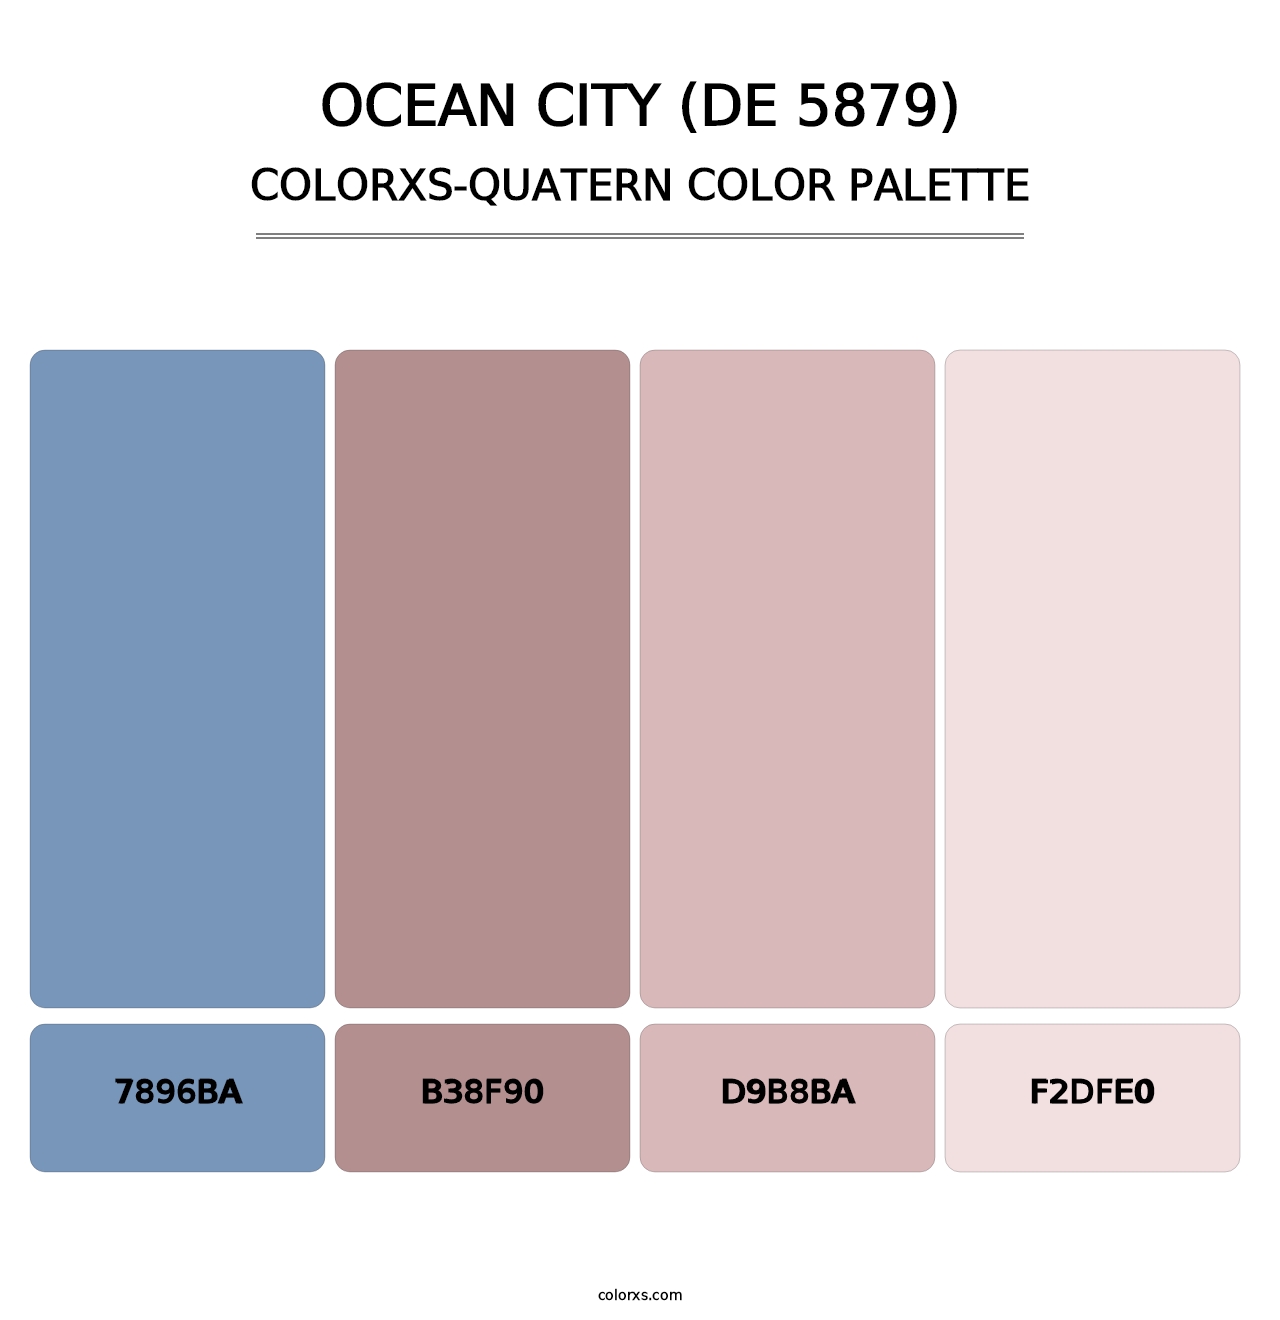 Ocean City (DE 5879) - Colorxs Quatern Palette